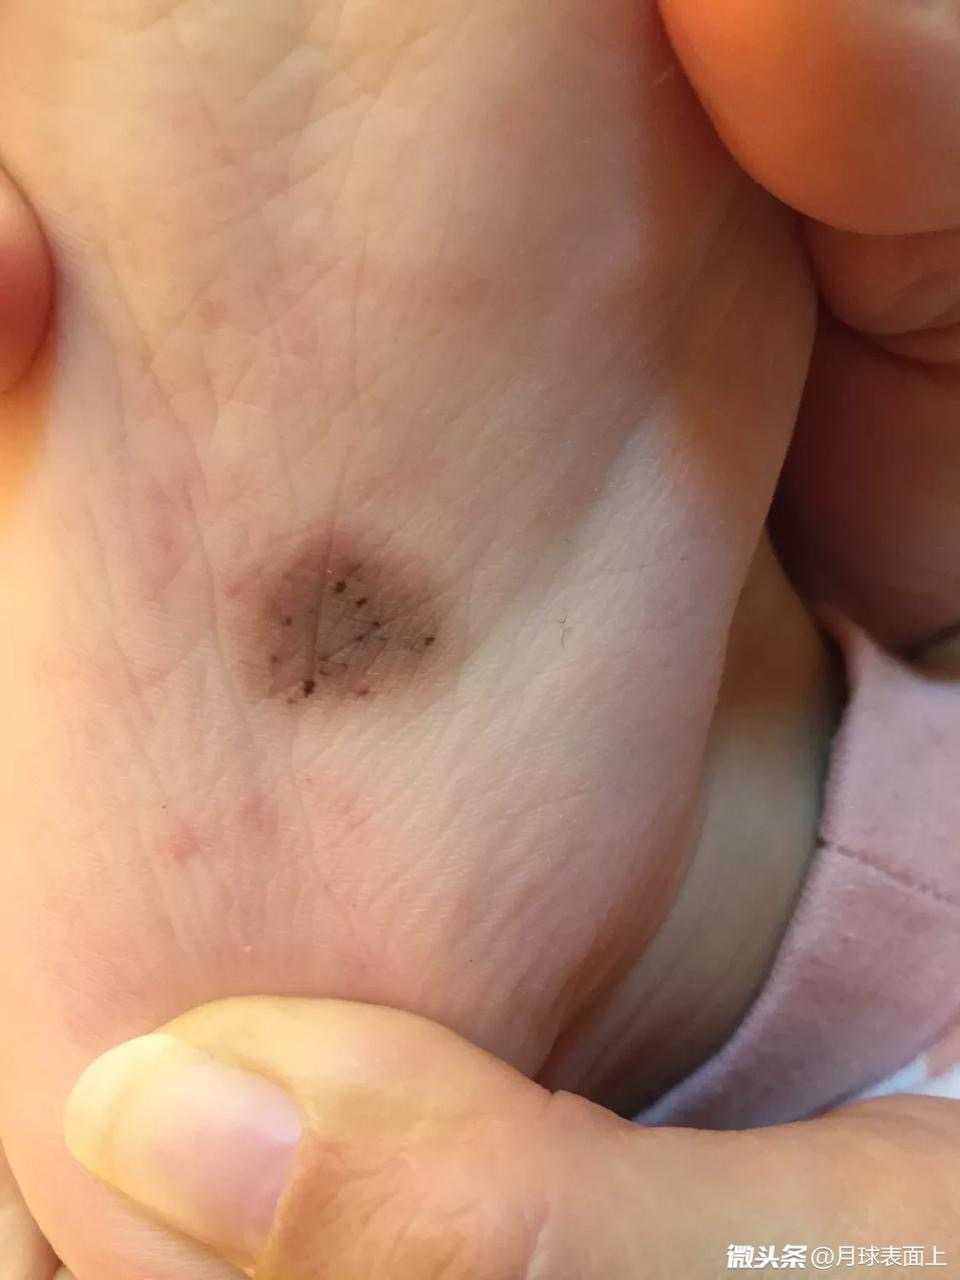 像这个宝宝脚底板的这个色素痣还是建议在孩子可以配合医生治疗的情况